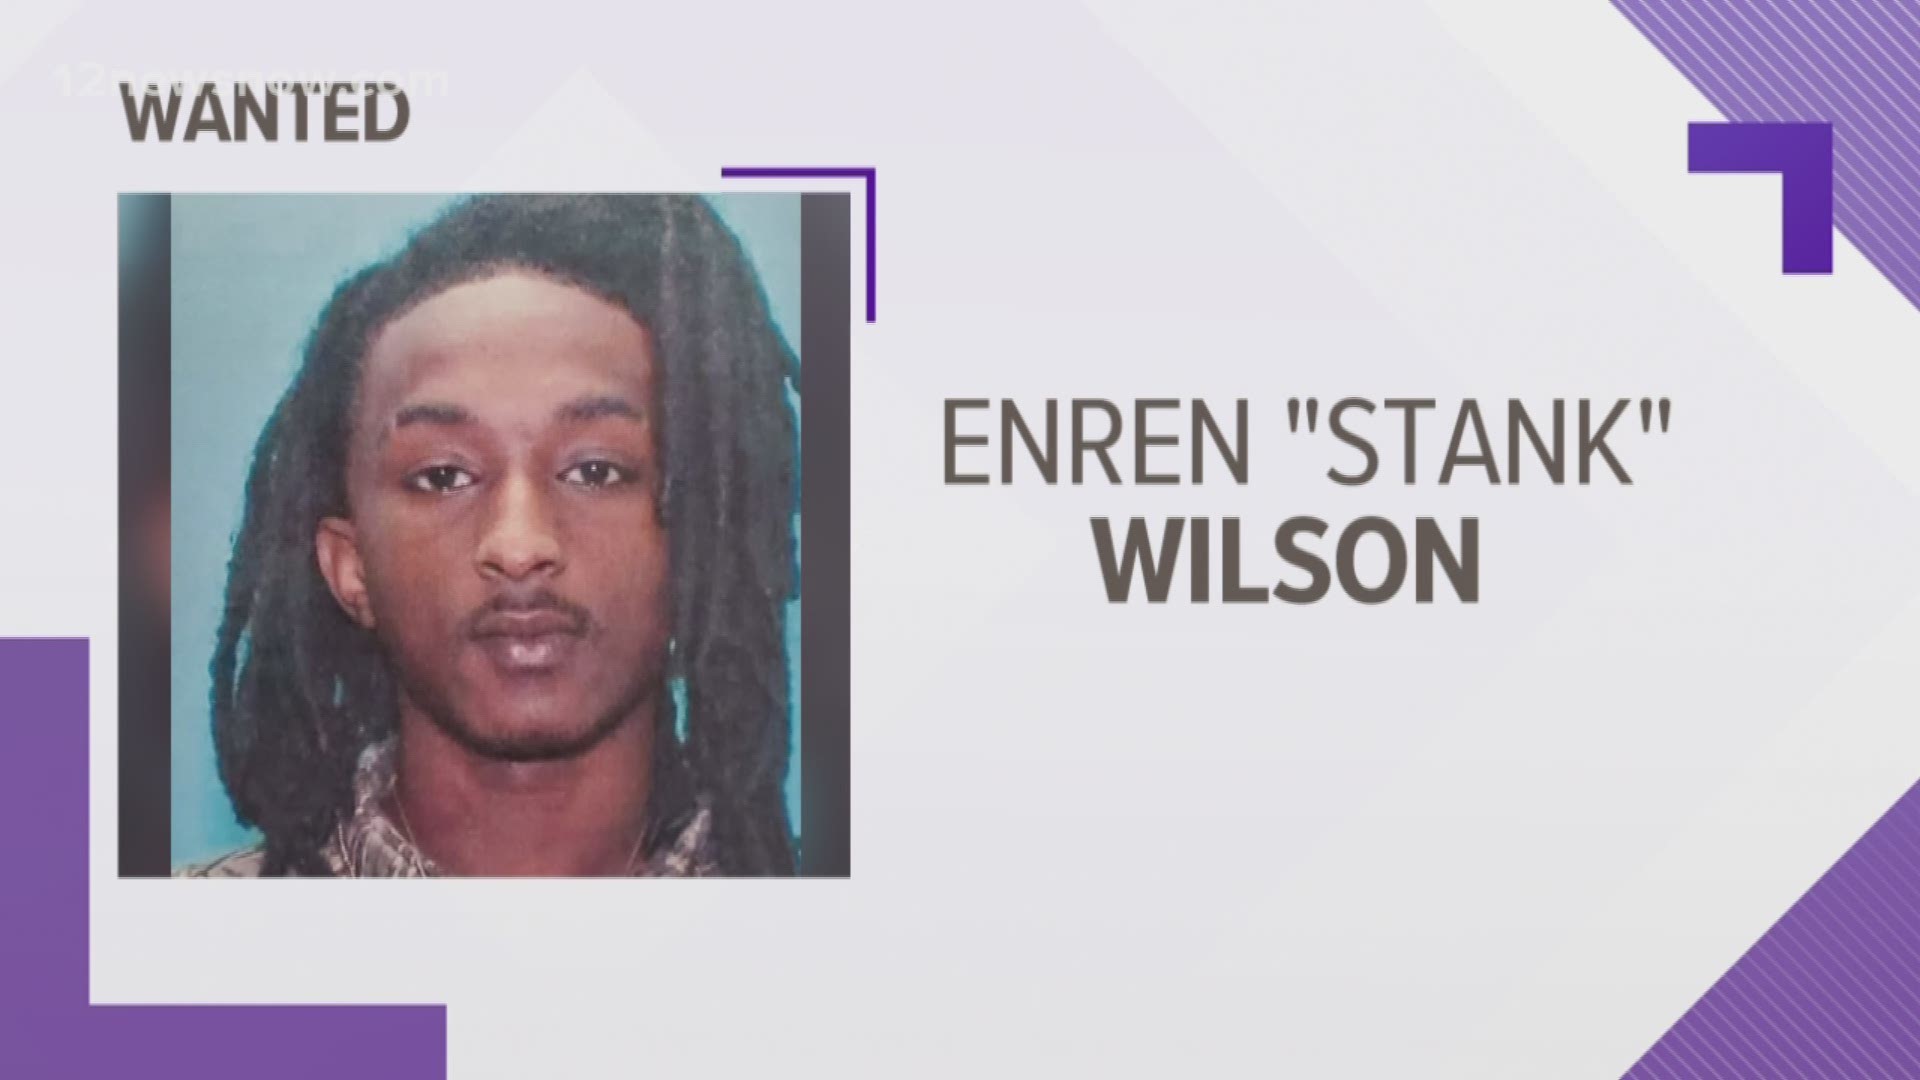 Enren 'Stank' Wilson is sought by police